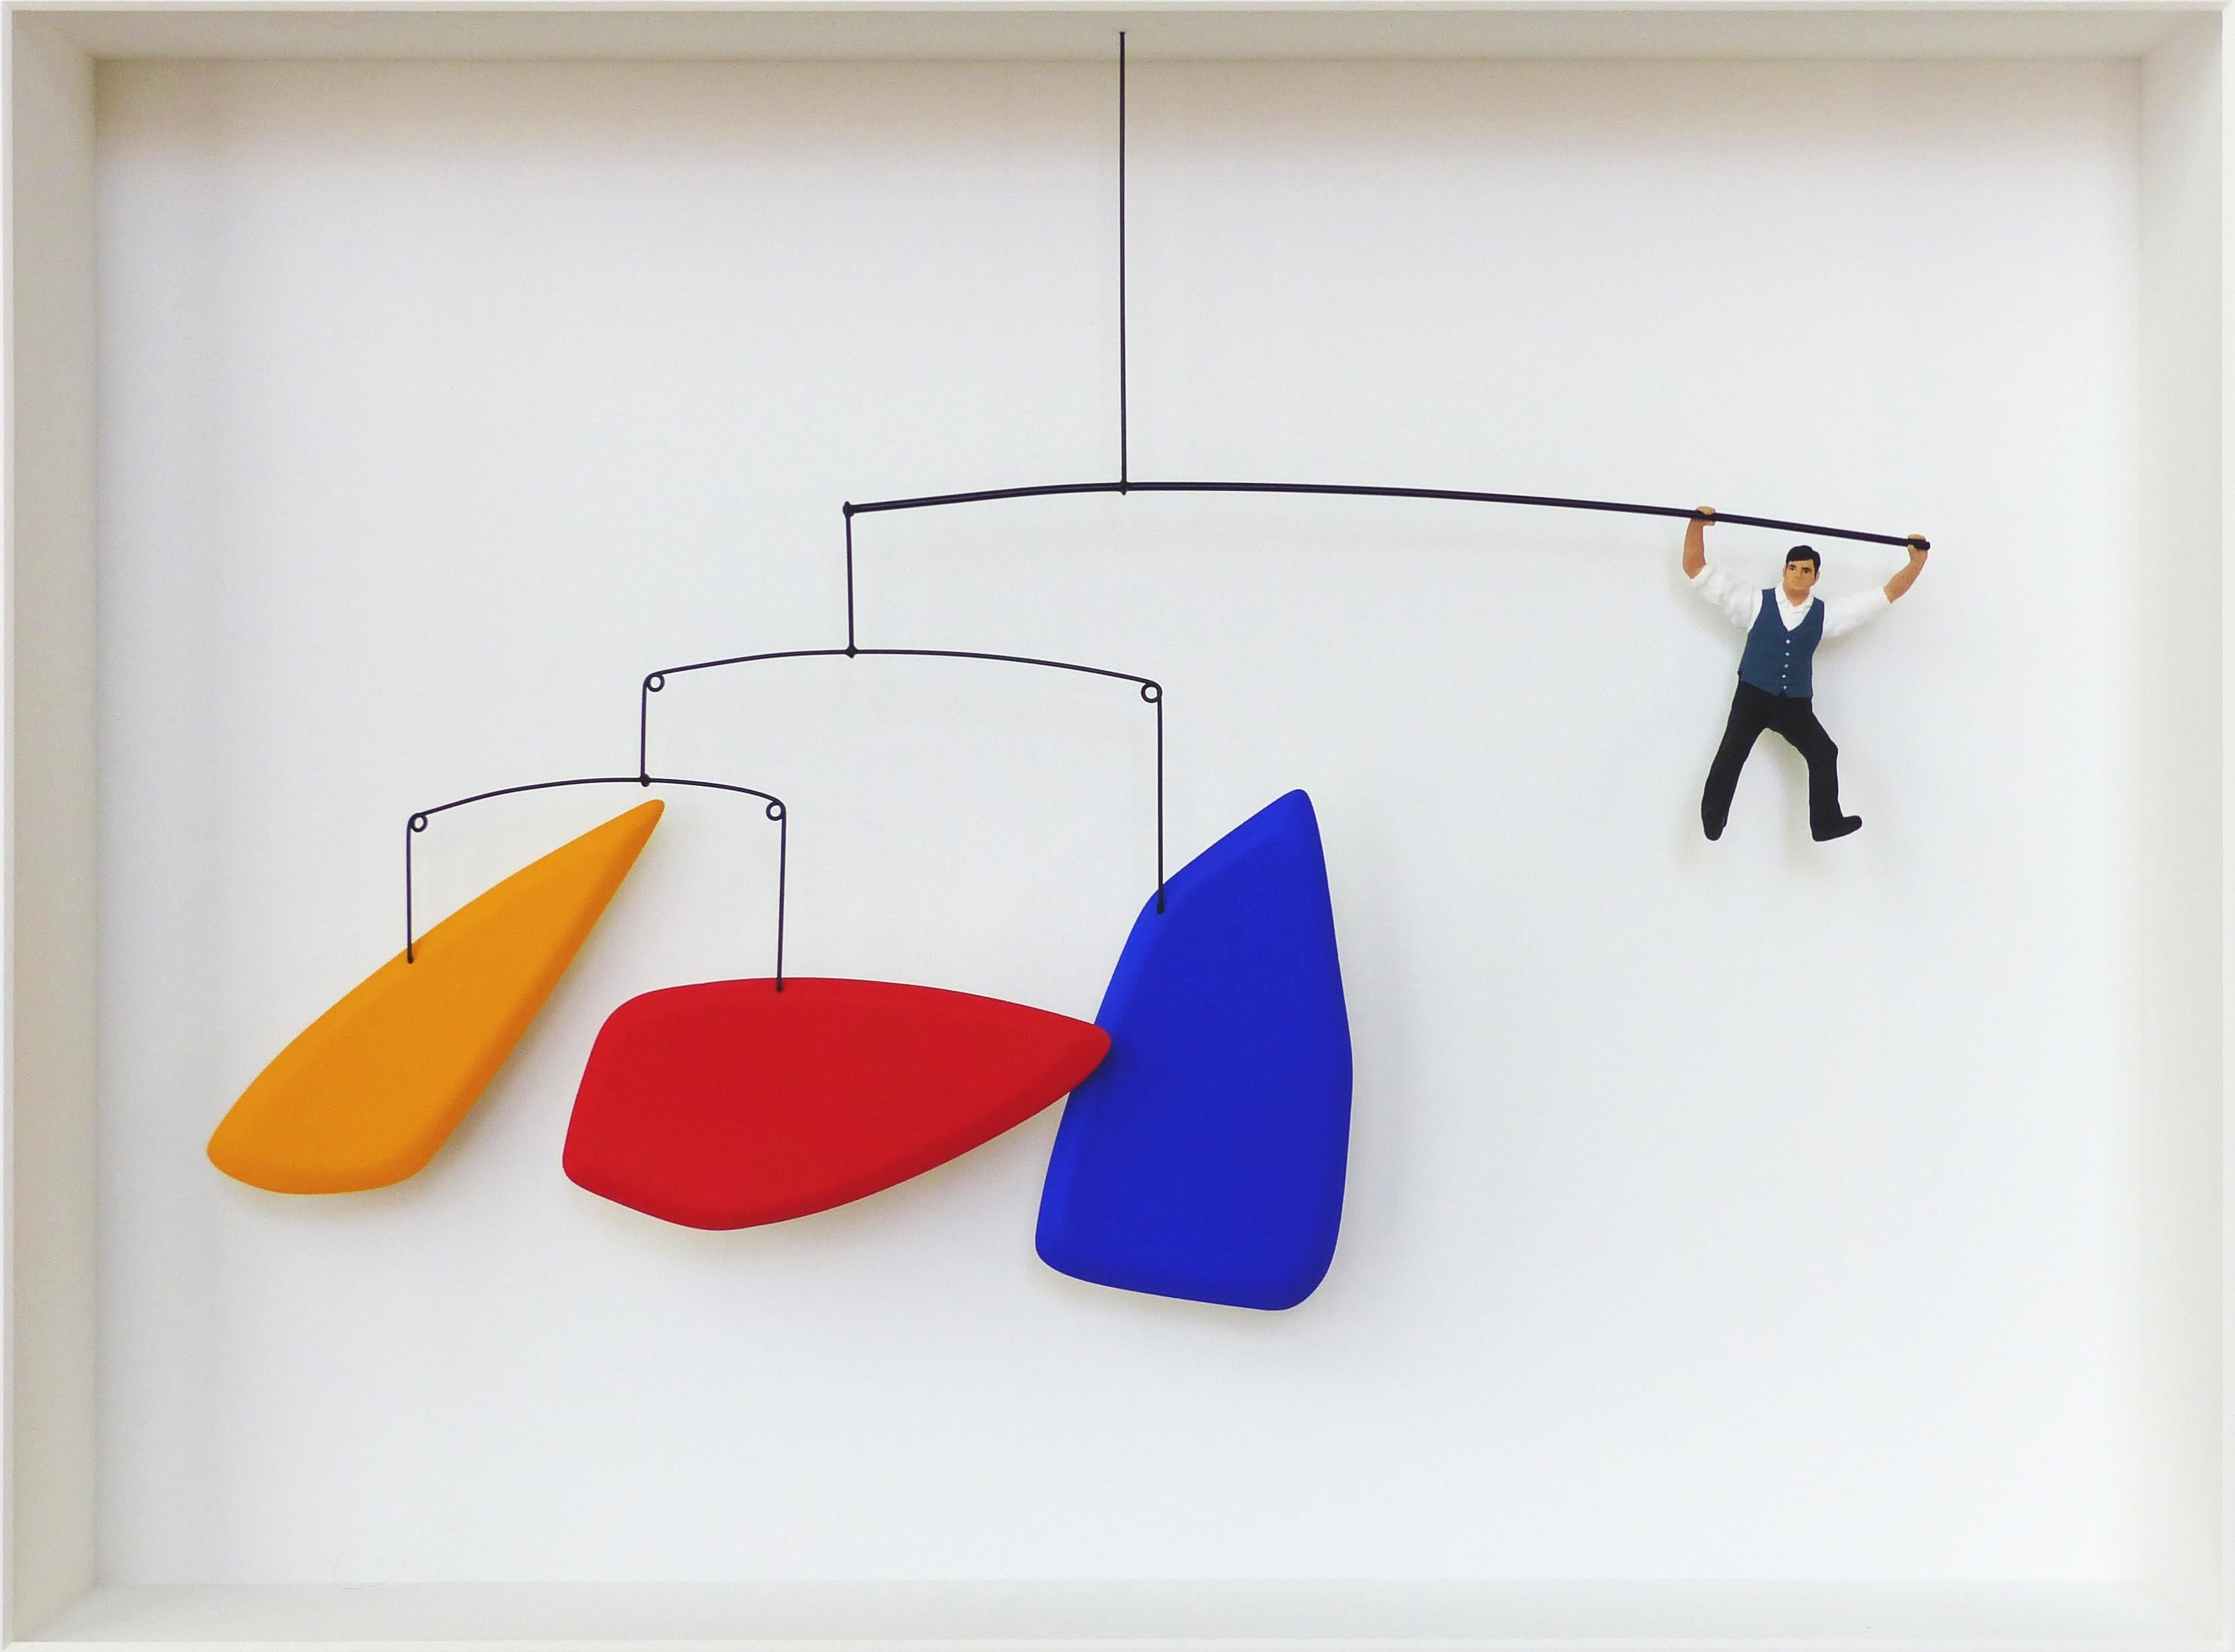 Hommage à Calder - œuvres d'art contemporain, design en hommage à Alexander Calder 